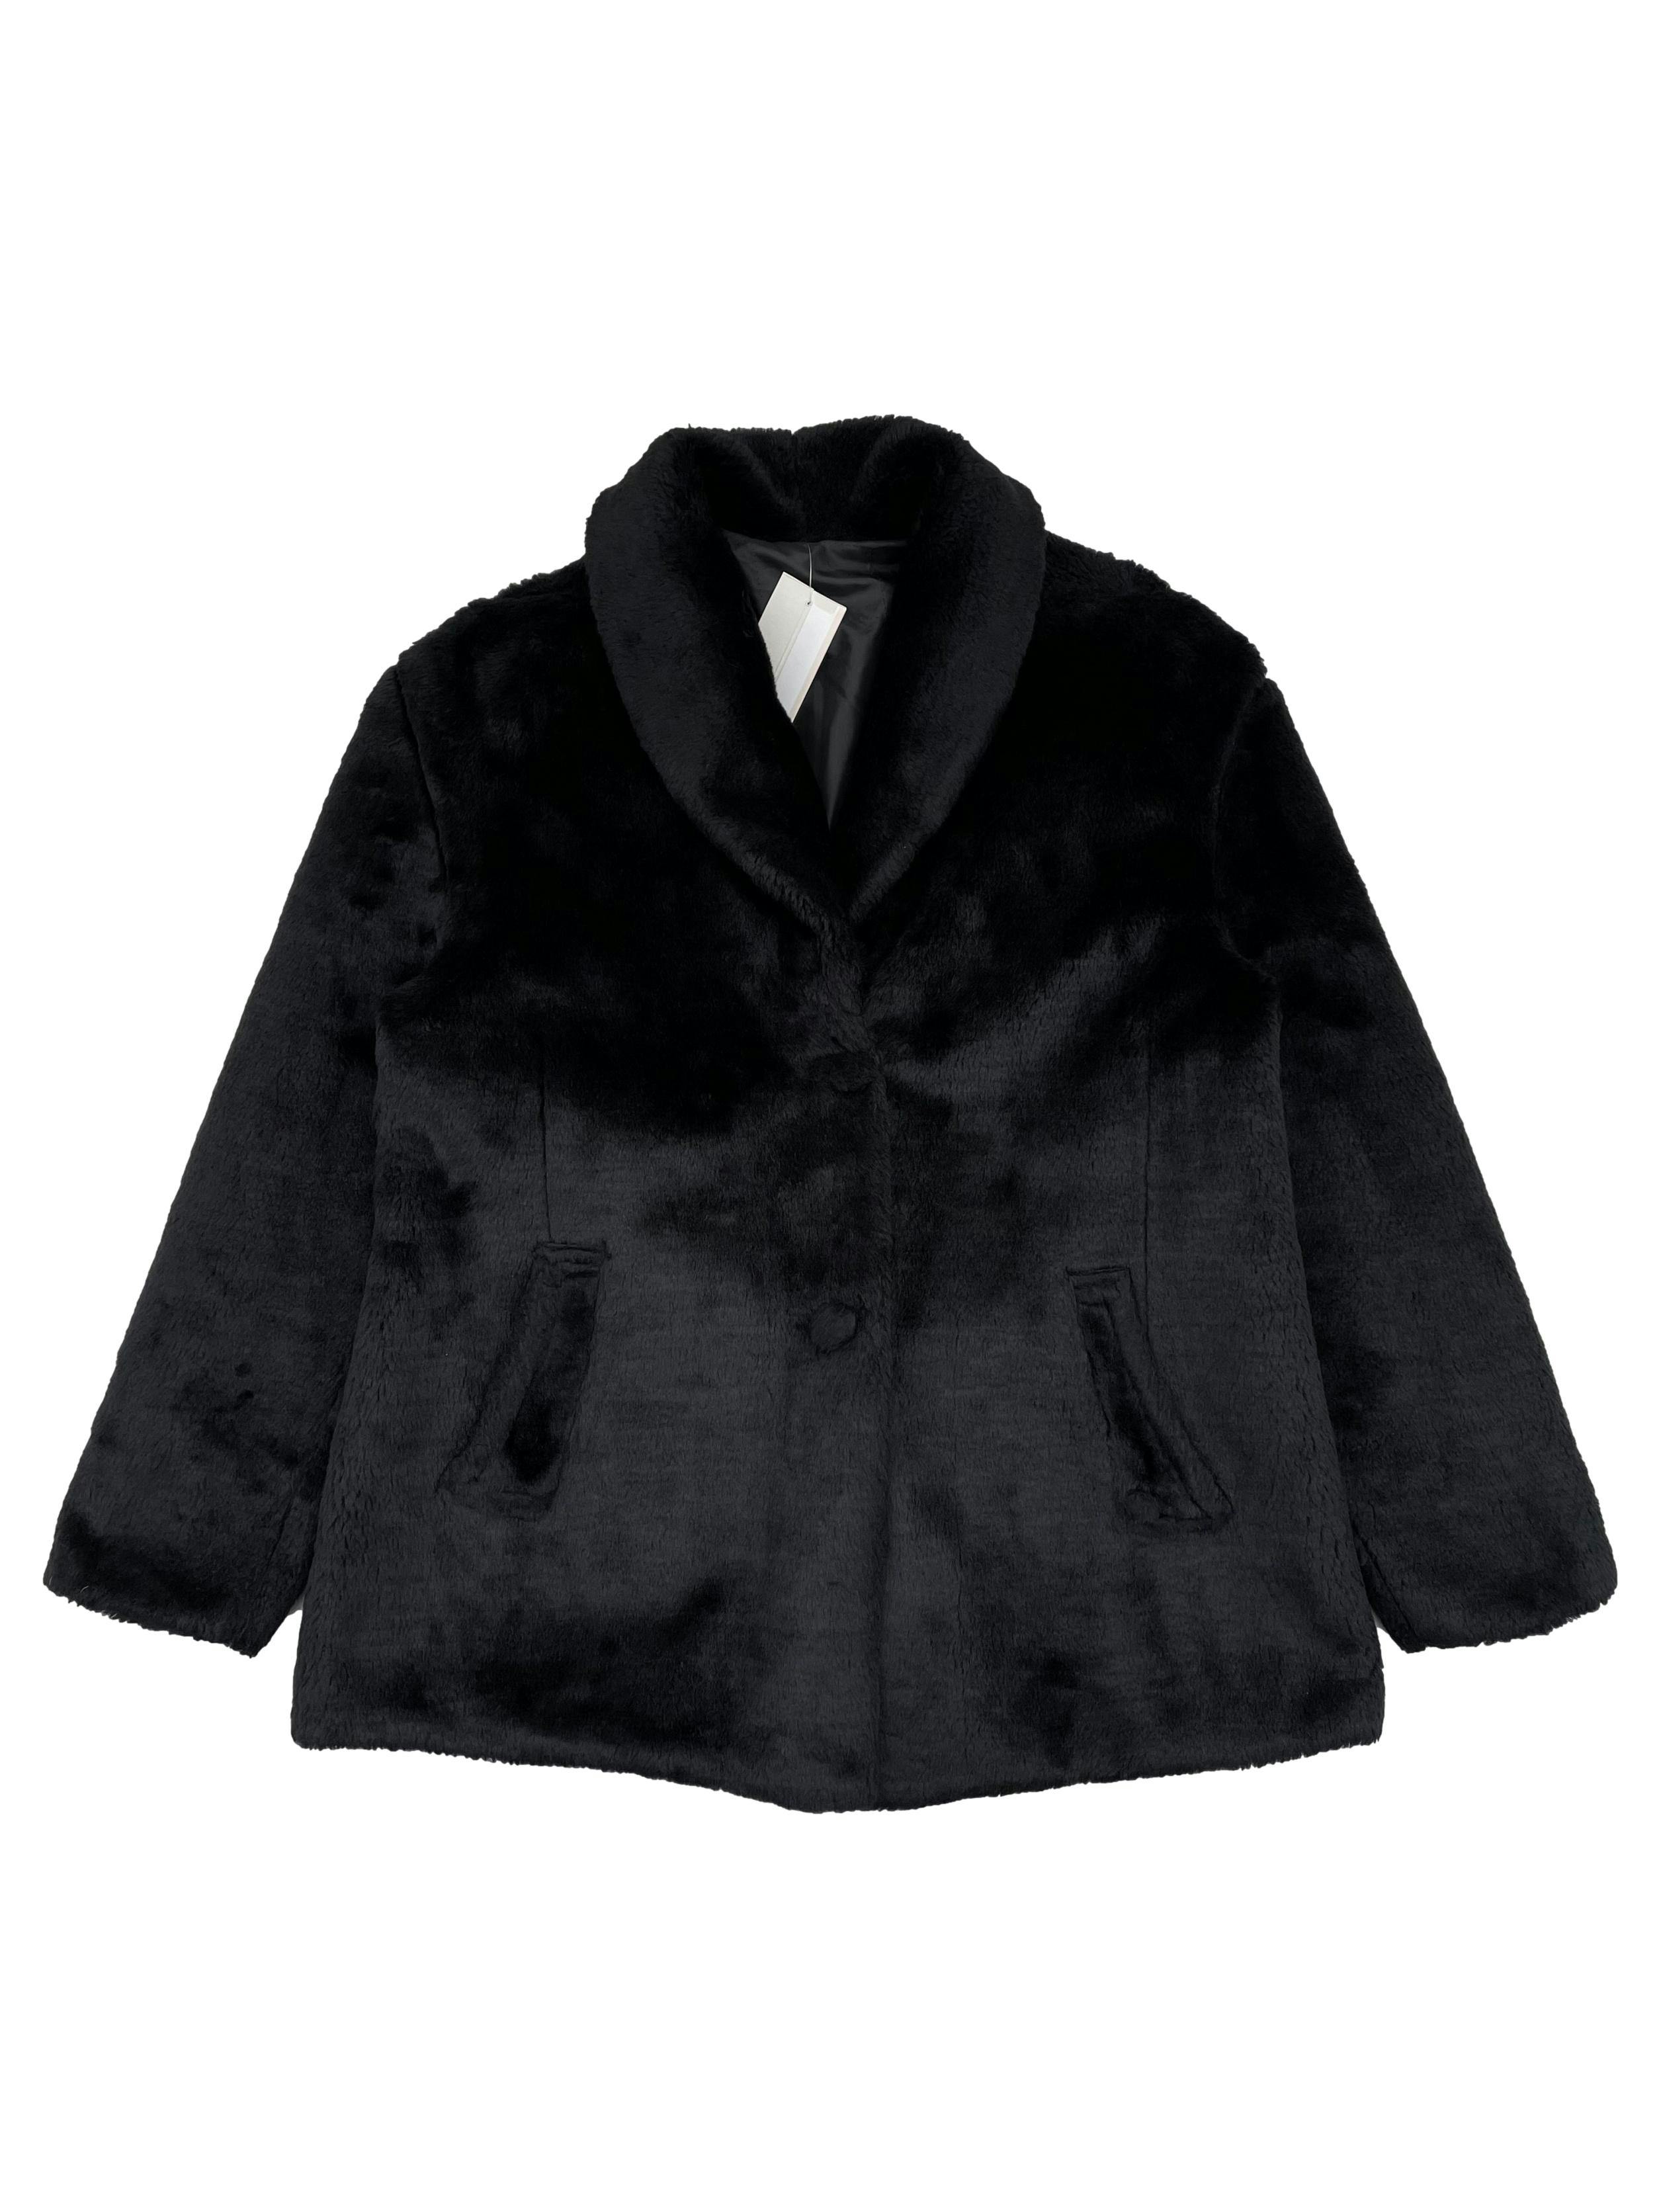 Abrigo negro efecto peluche, forrado, con bolsillos y botones. Busto 105cm Largo 62cm